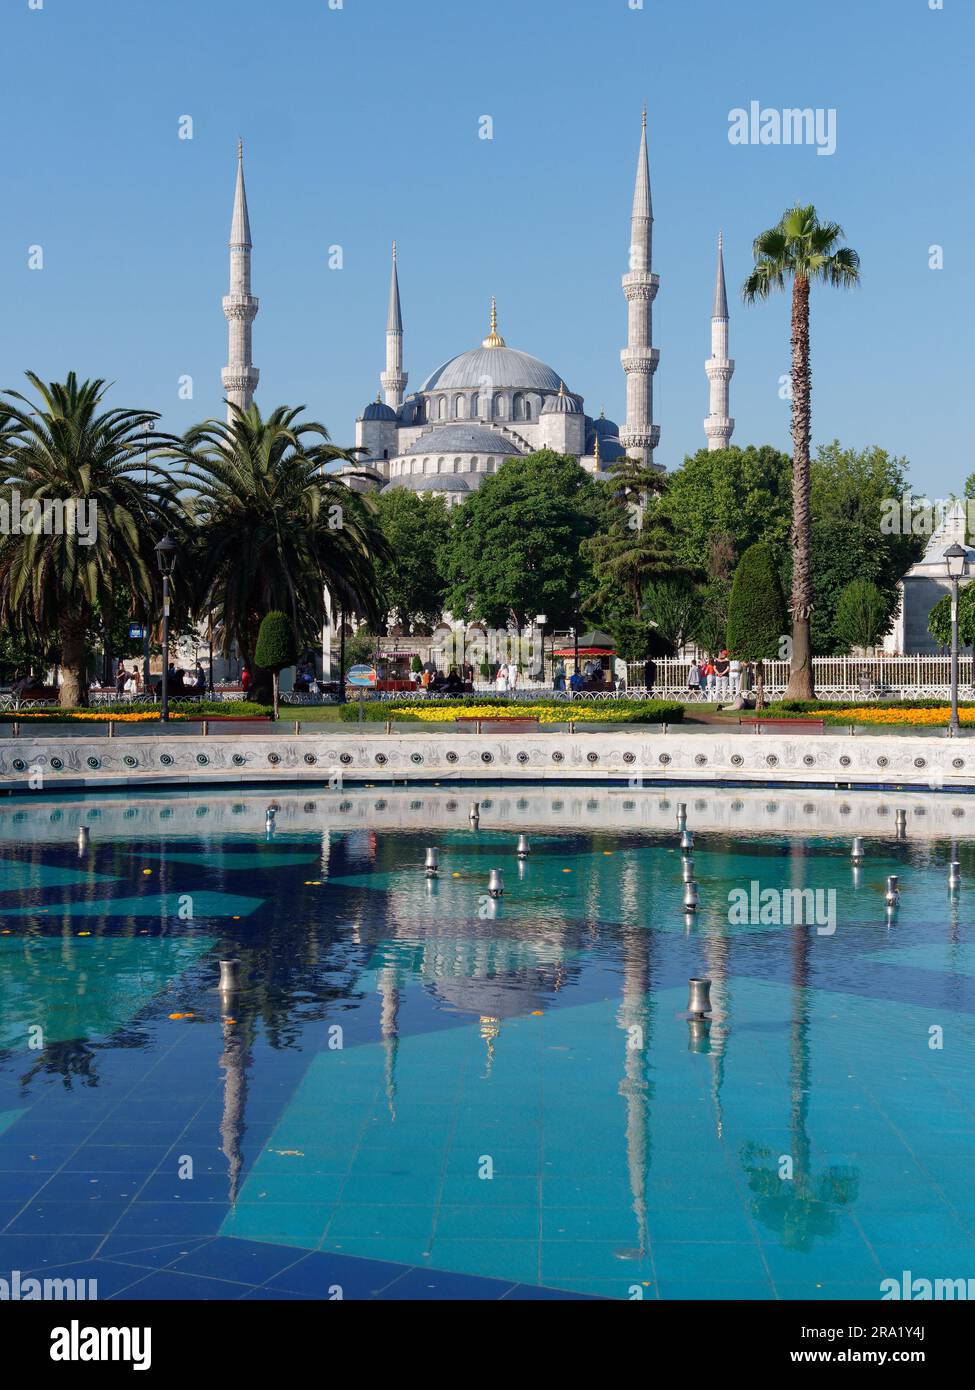 Sultan Ahmed aka Mosquée Bleue avec fontaine devant, quartier Sultanahmet, Istanbul, Turquie Banque D'Images